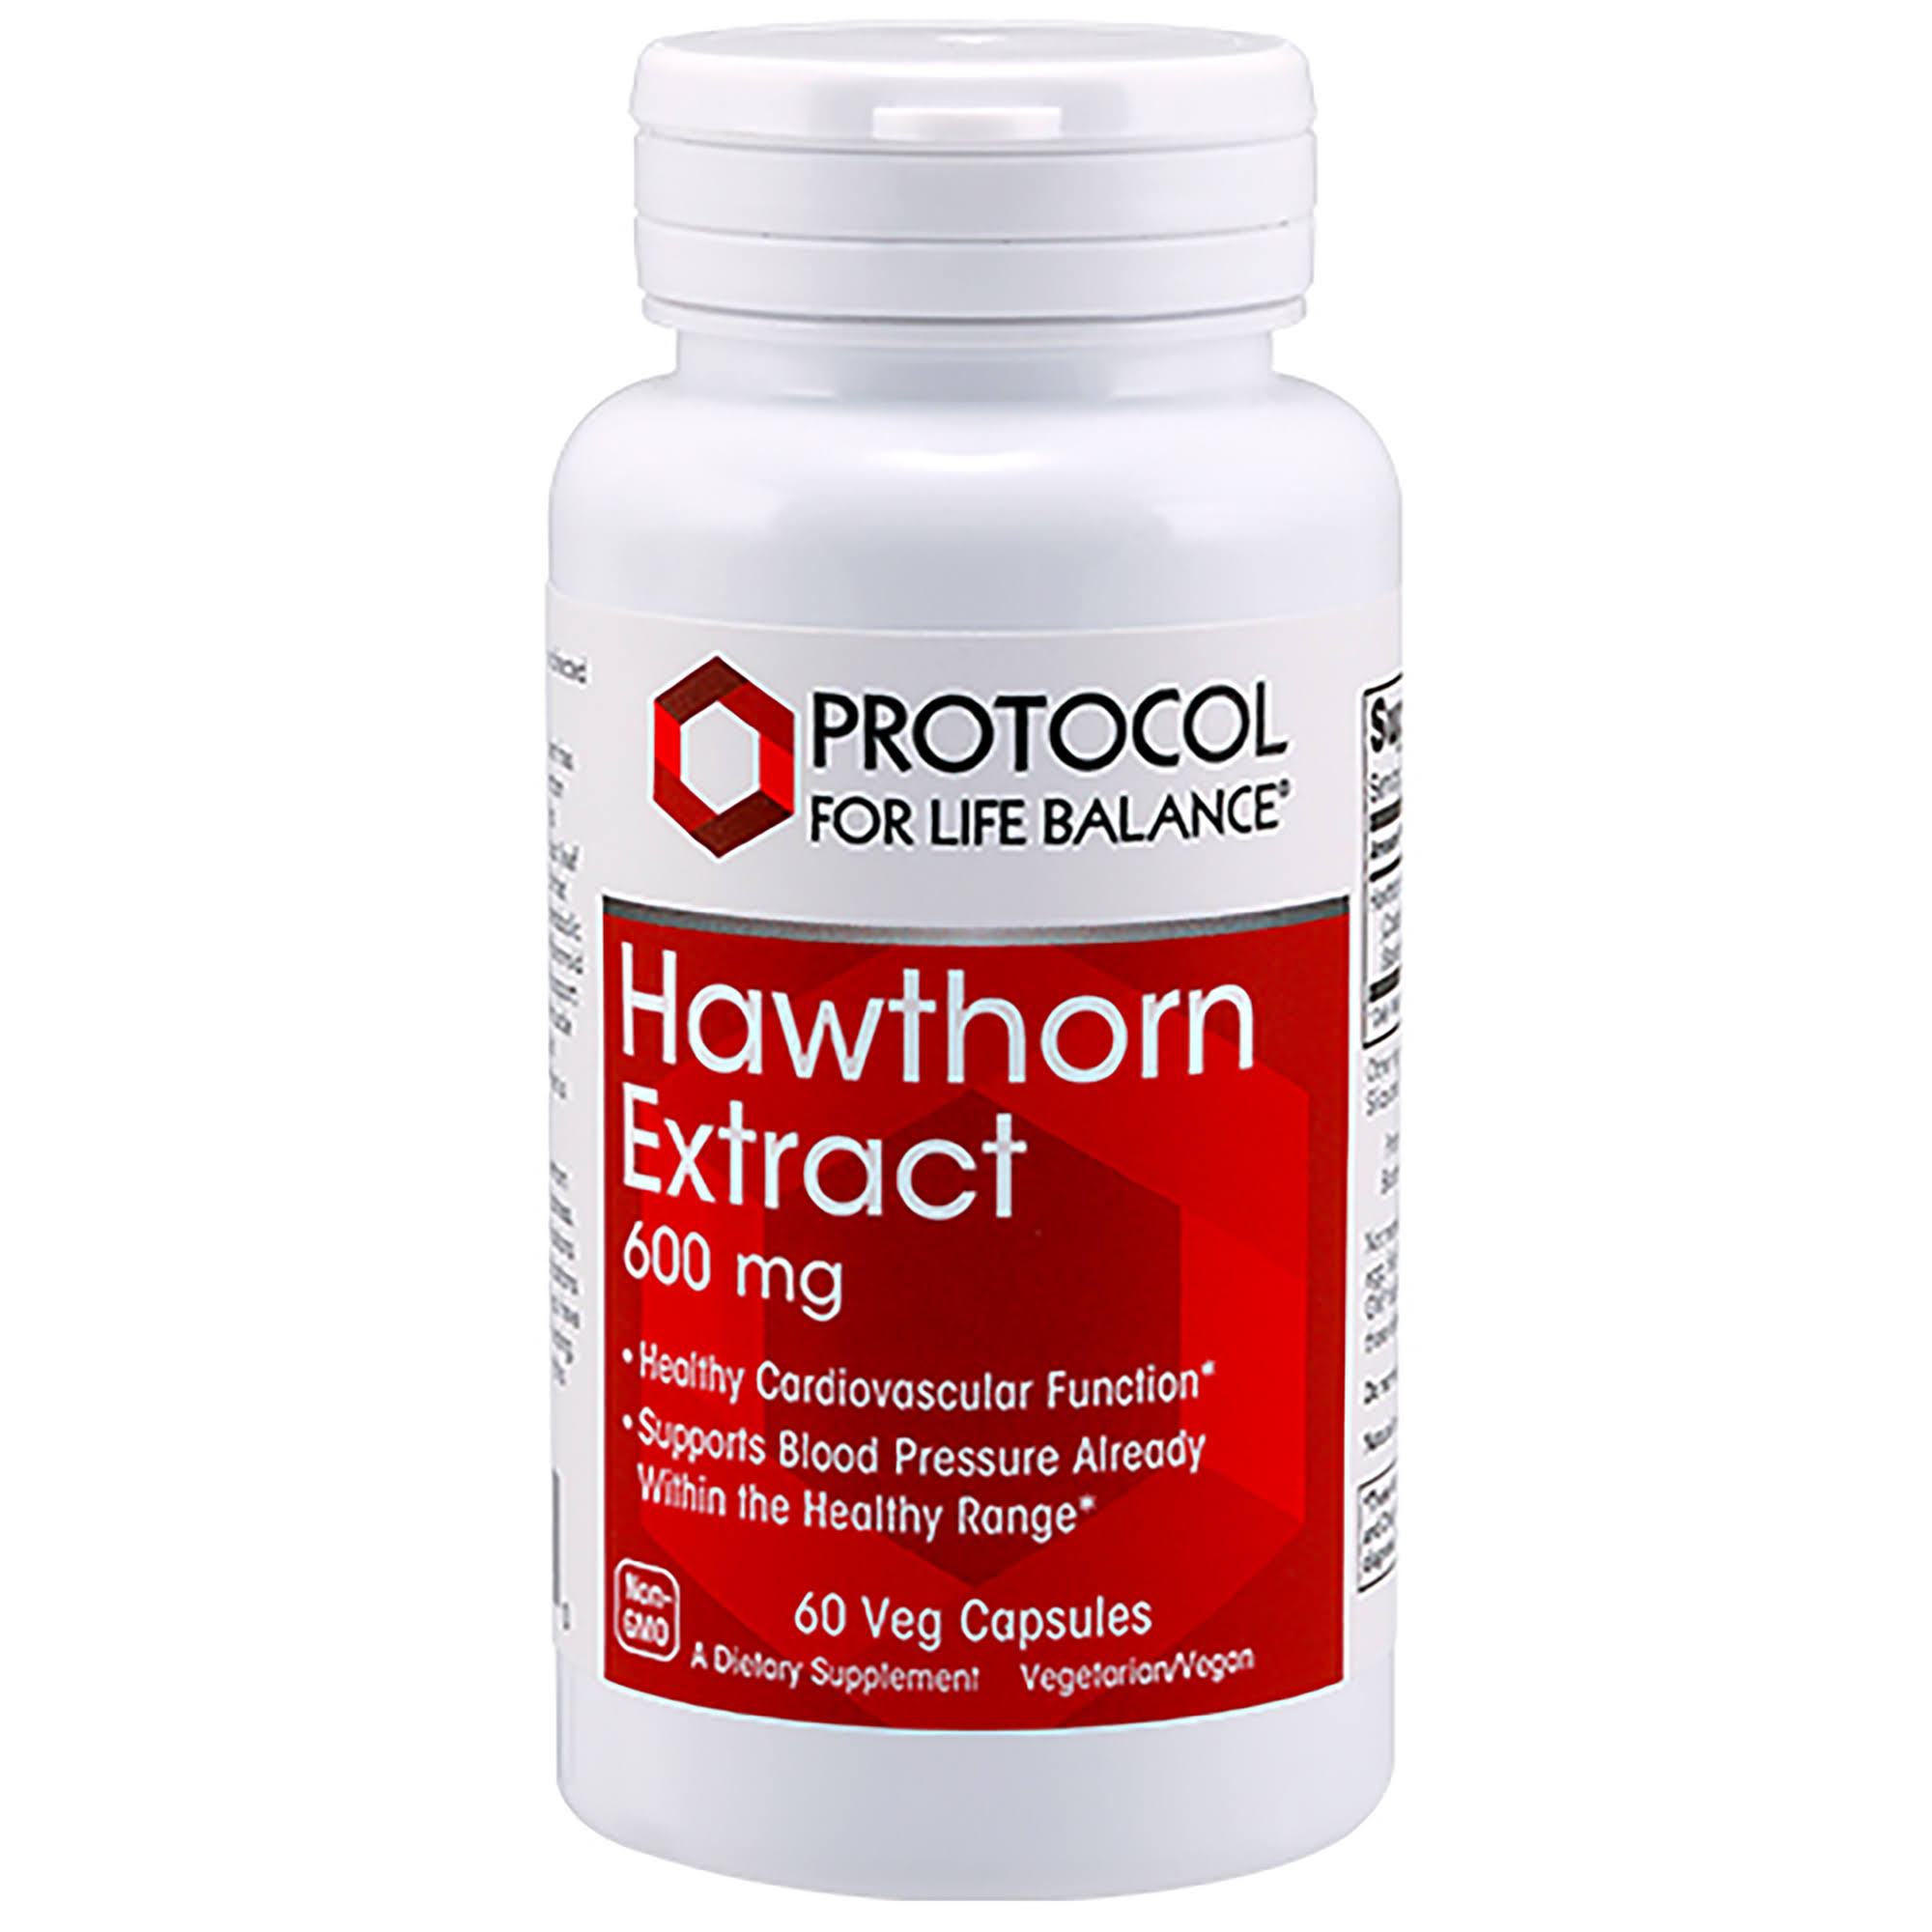 Protocol for life Balance Hawthorn Extract 600 mg